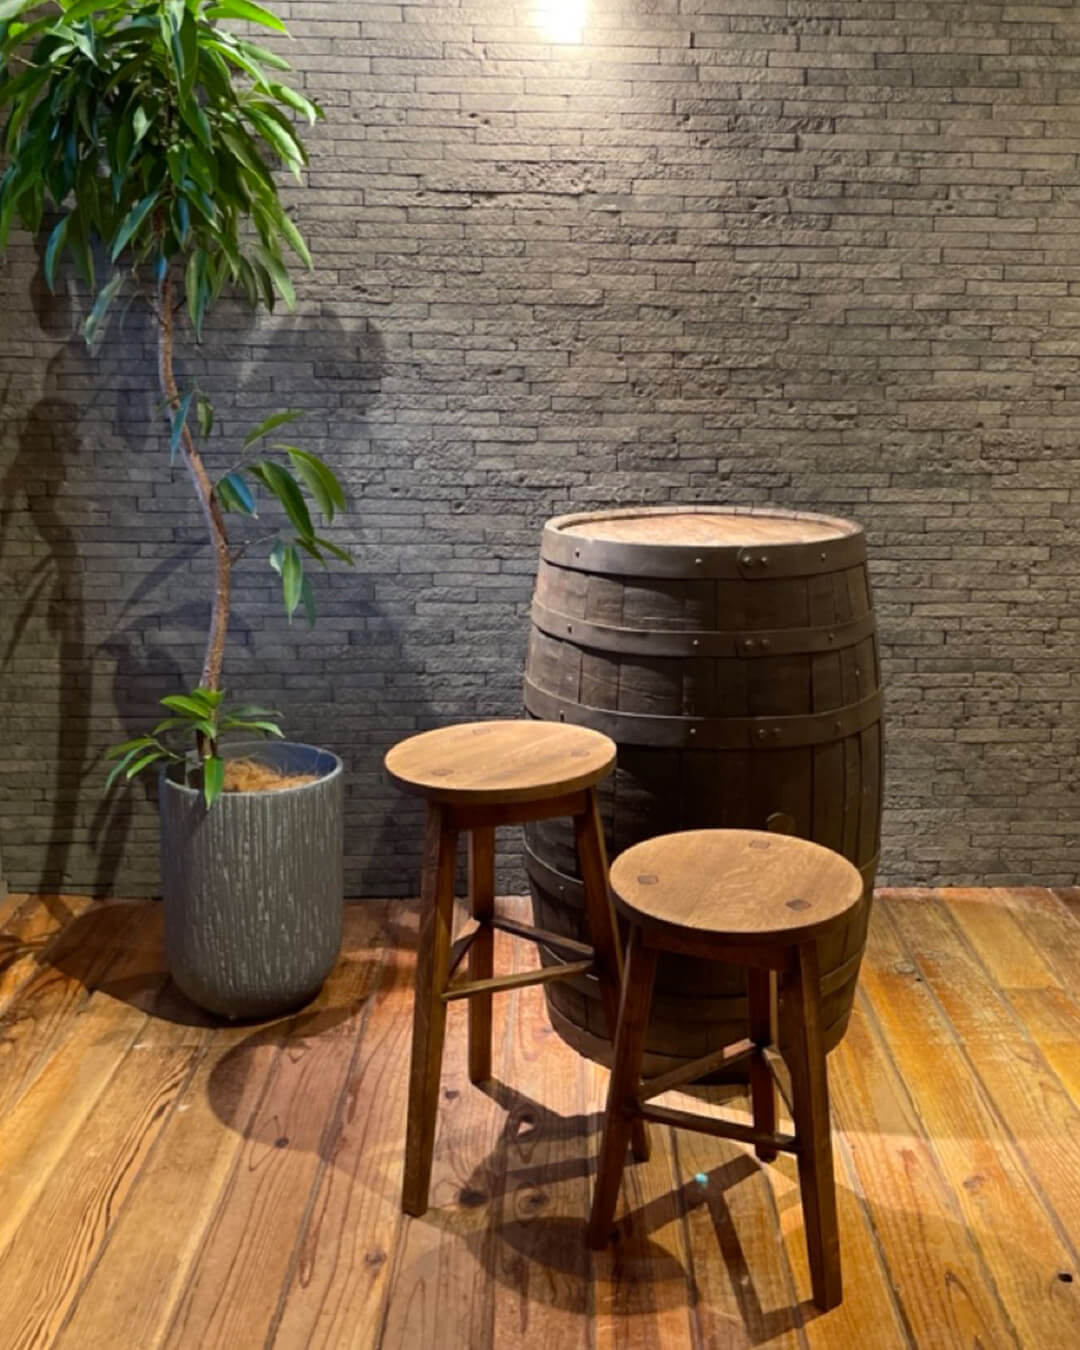 Whisky oak - 日本橡木酒桶再製環保椅凳 ALOT Living